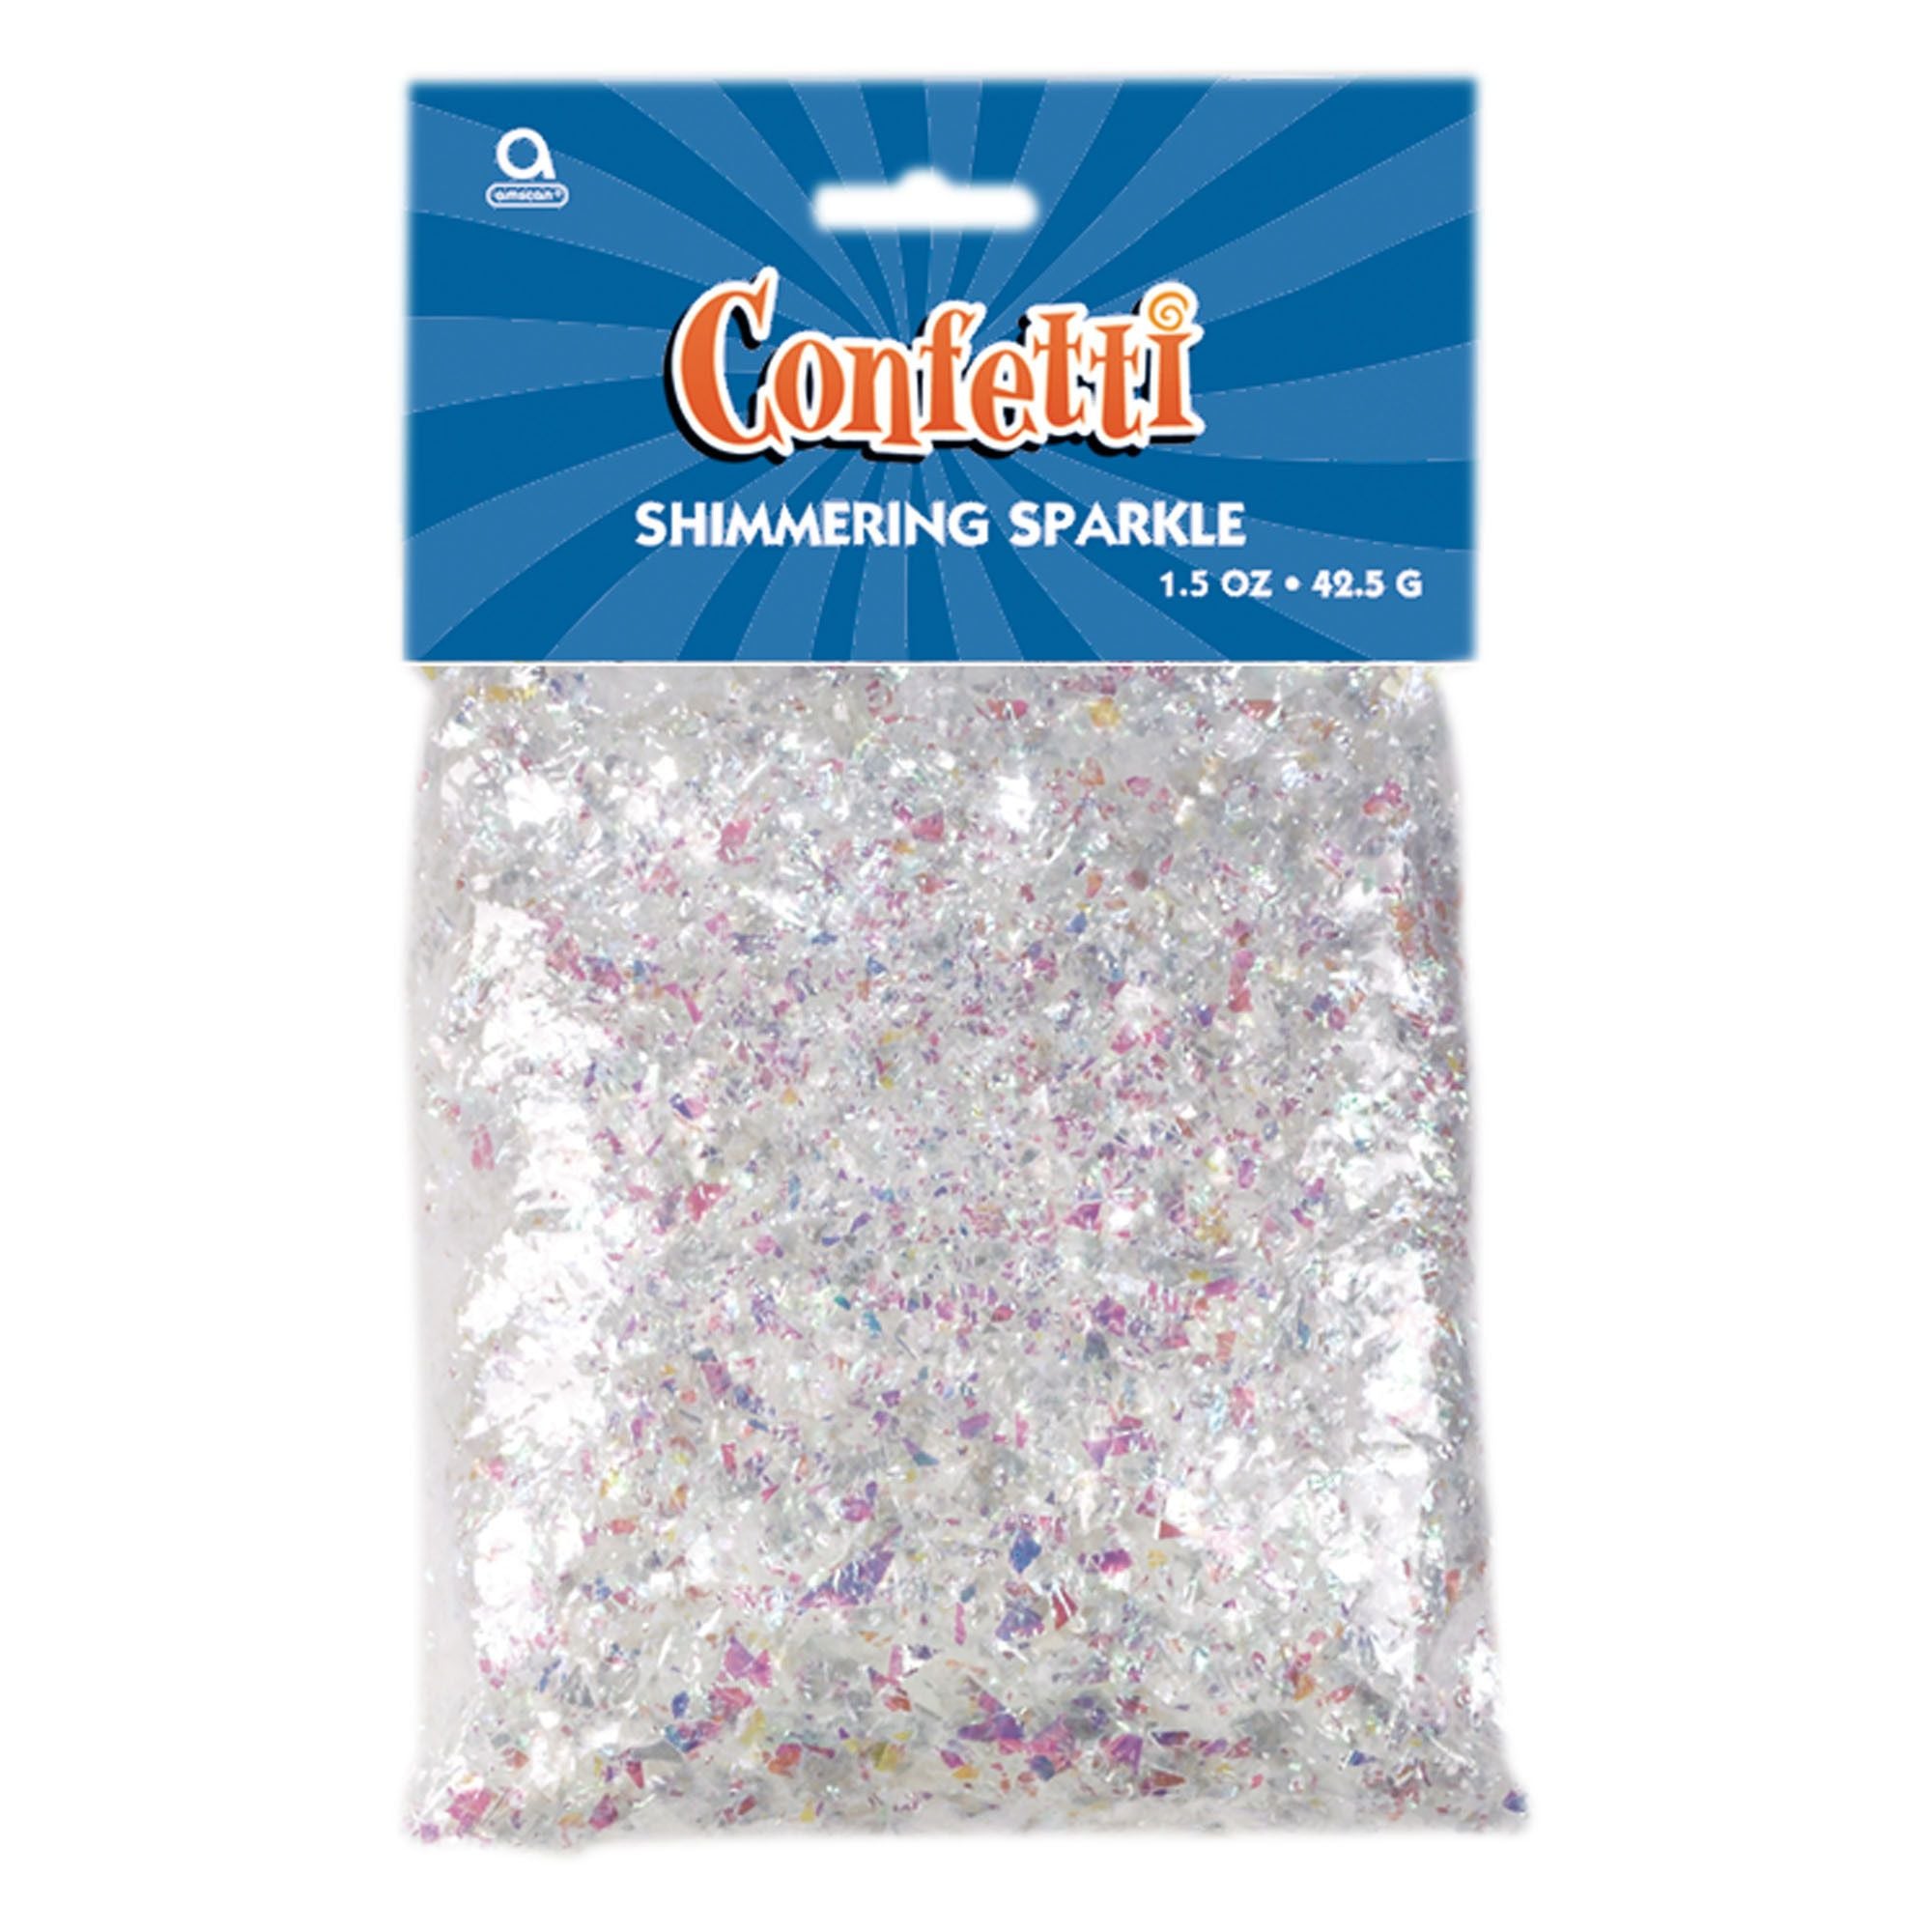 Sparkle Foil Shred Confetti